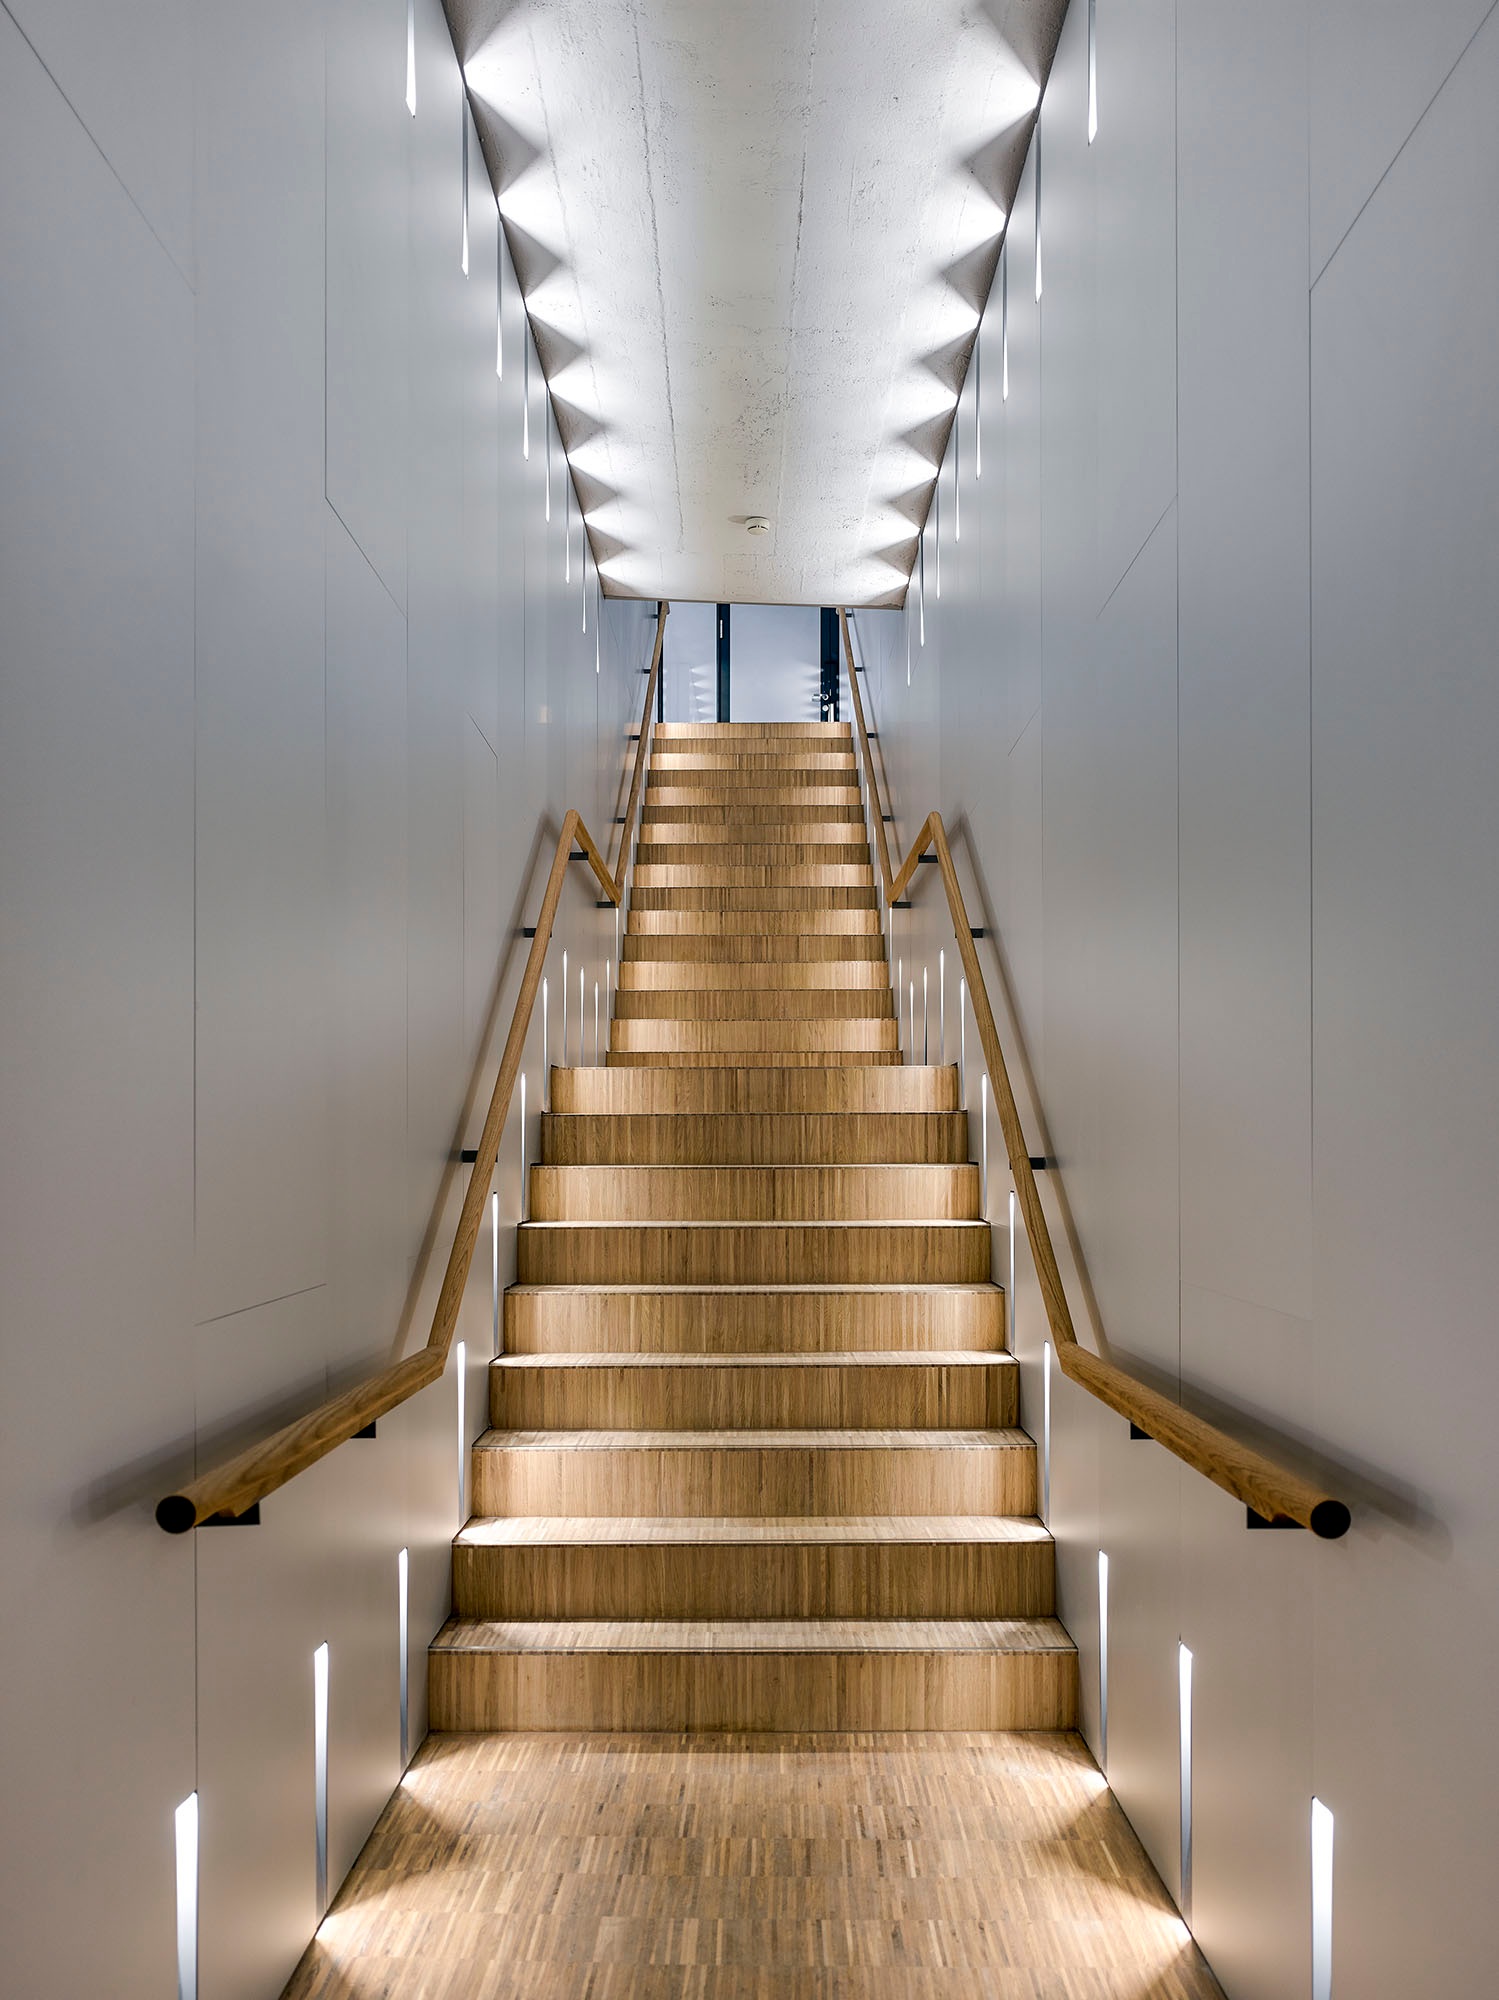 Un escalier recouvert de parquet mène à l’étage supérieur et se distingue de manière remarquable par rapport à la blancheur des murs et des plafonds.